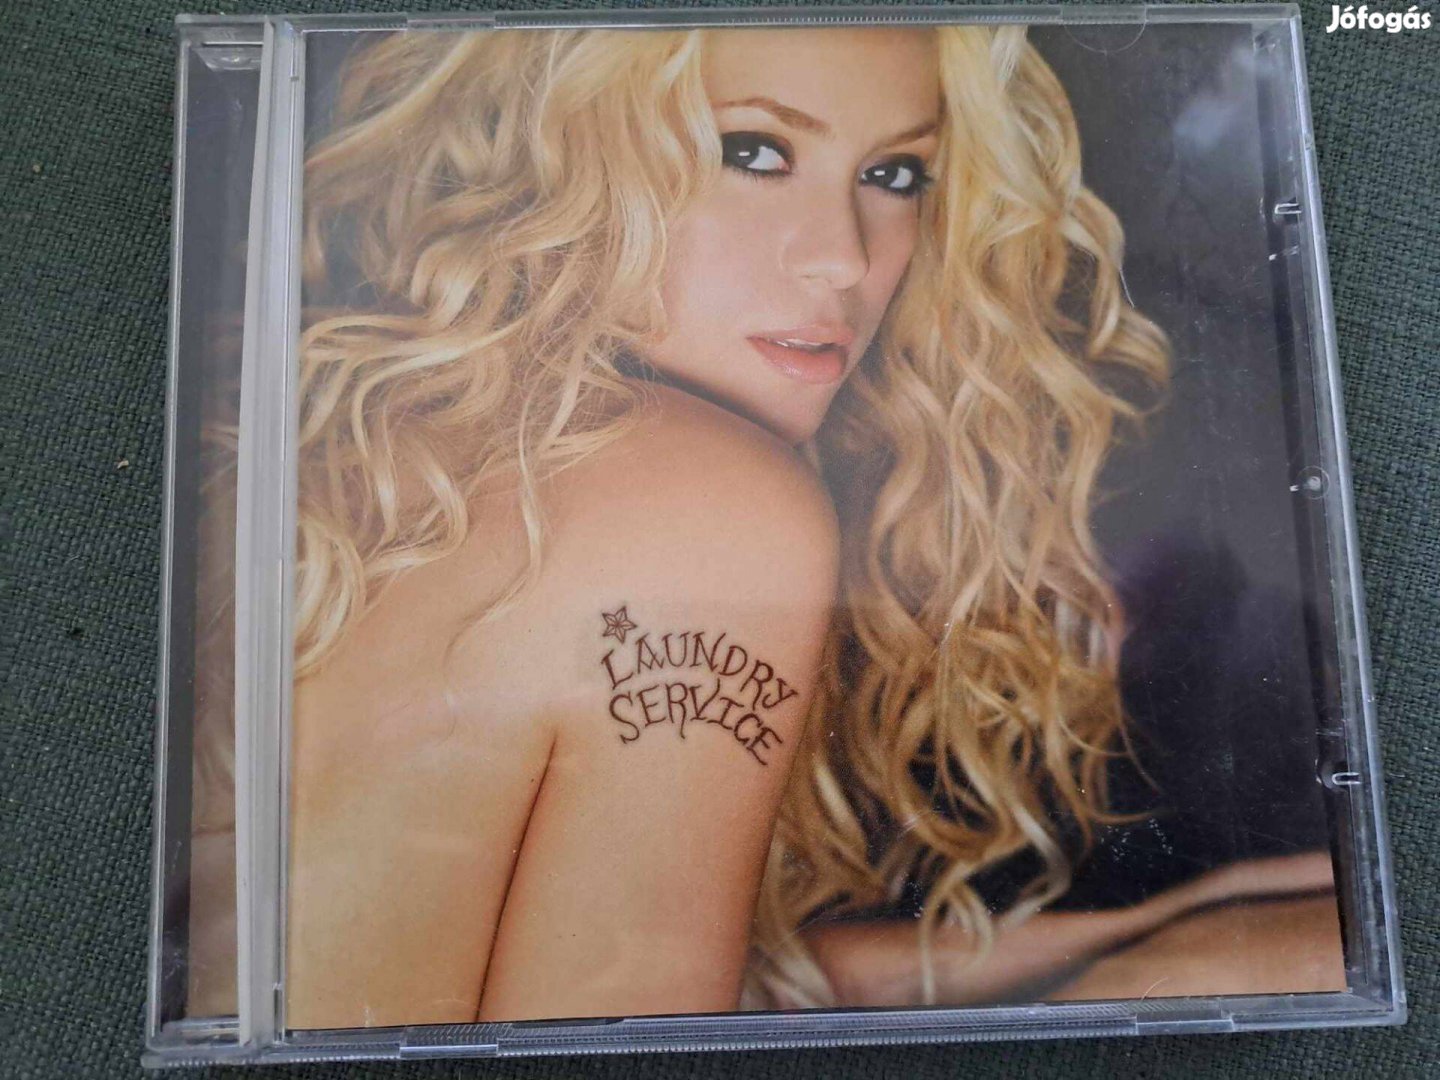 Shakira: Laundry Service CD